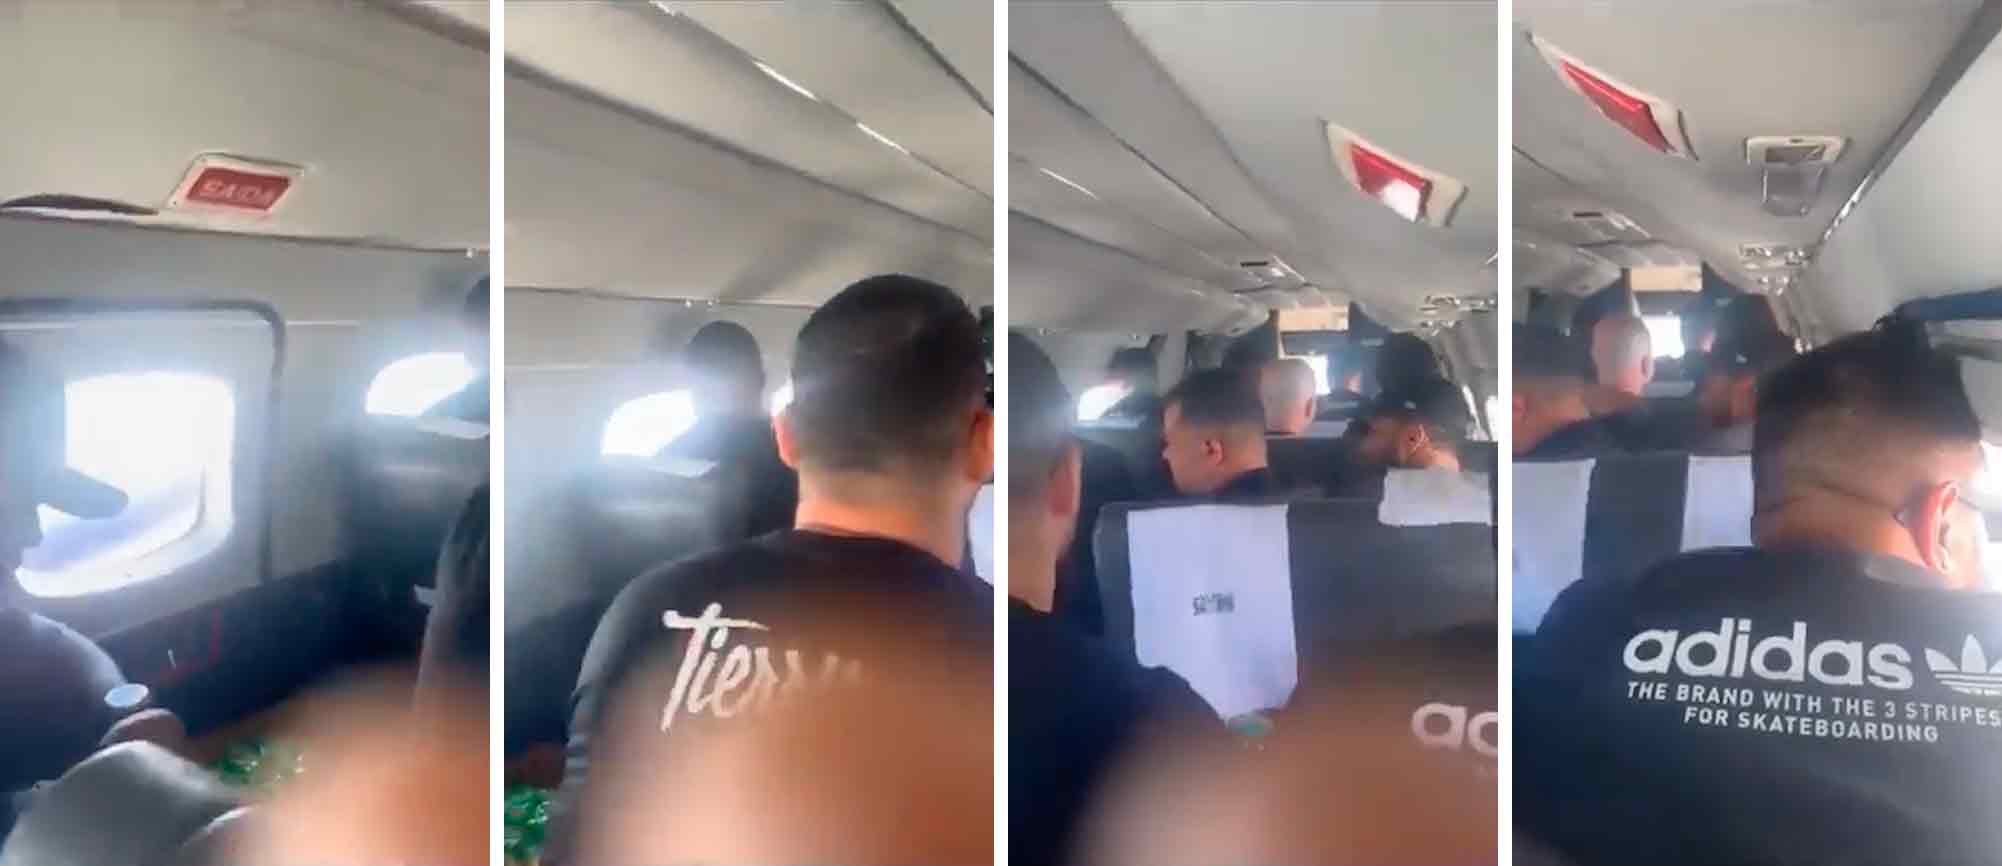 Vídeo: Avião com banda de Tierry solta pedaço da fuselagem durante o voo